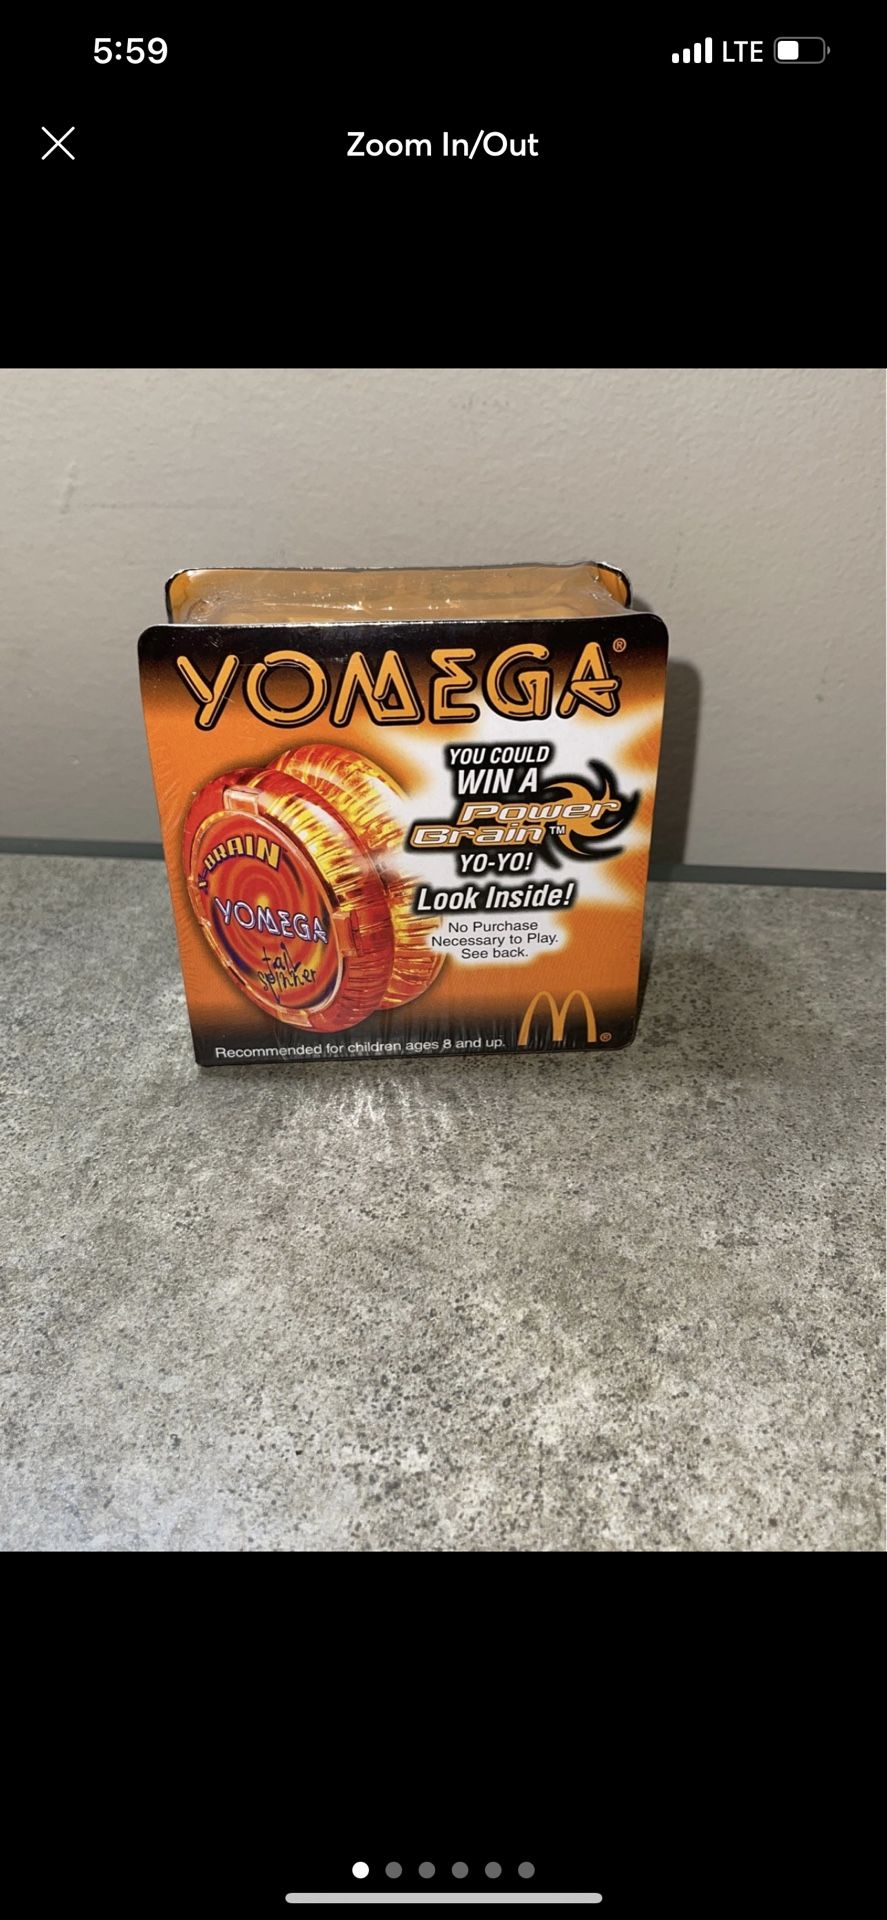 2000 MCDONALDS YOMEGA X-BRAIN TAIL SPINNER ORANGE #3 YO-YO NEW SEALED BOX